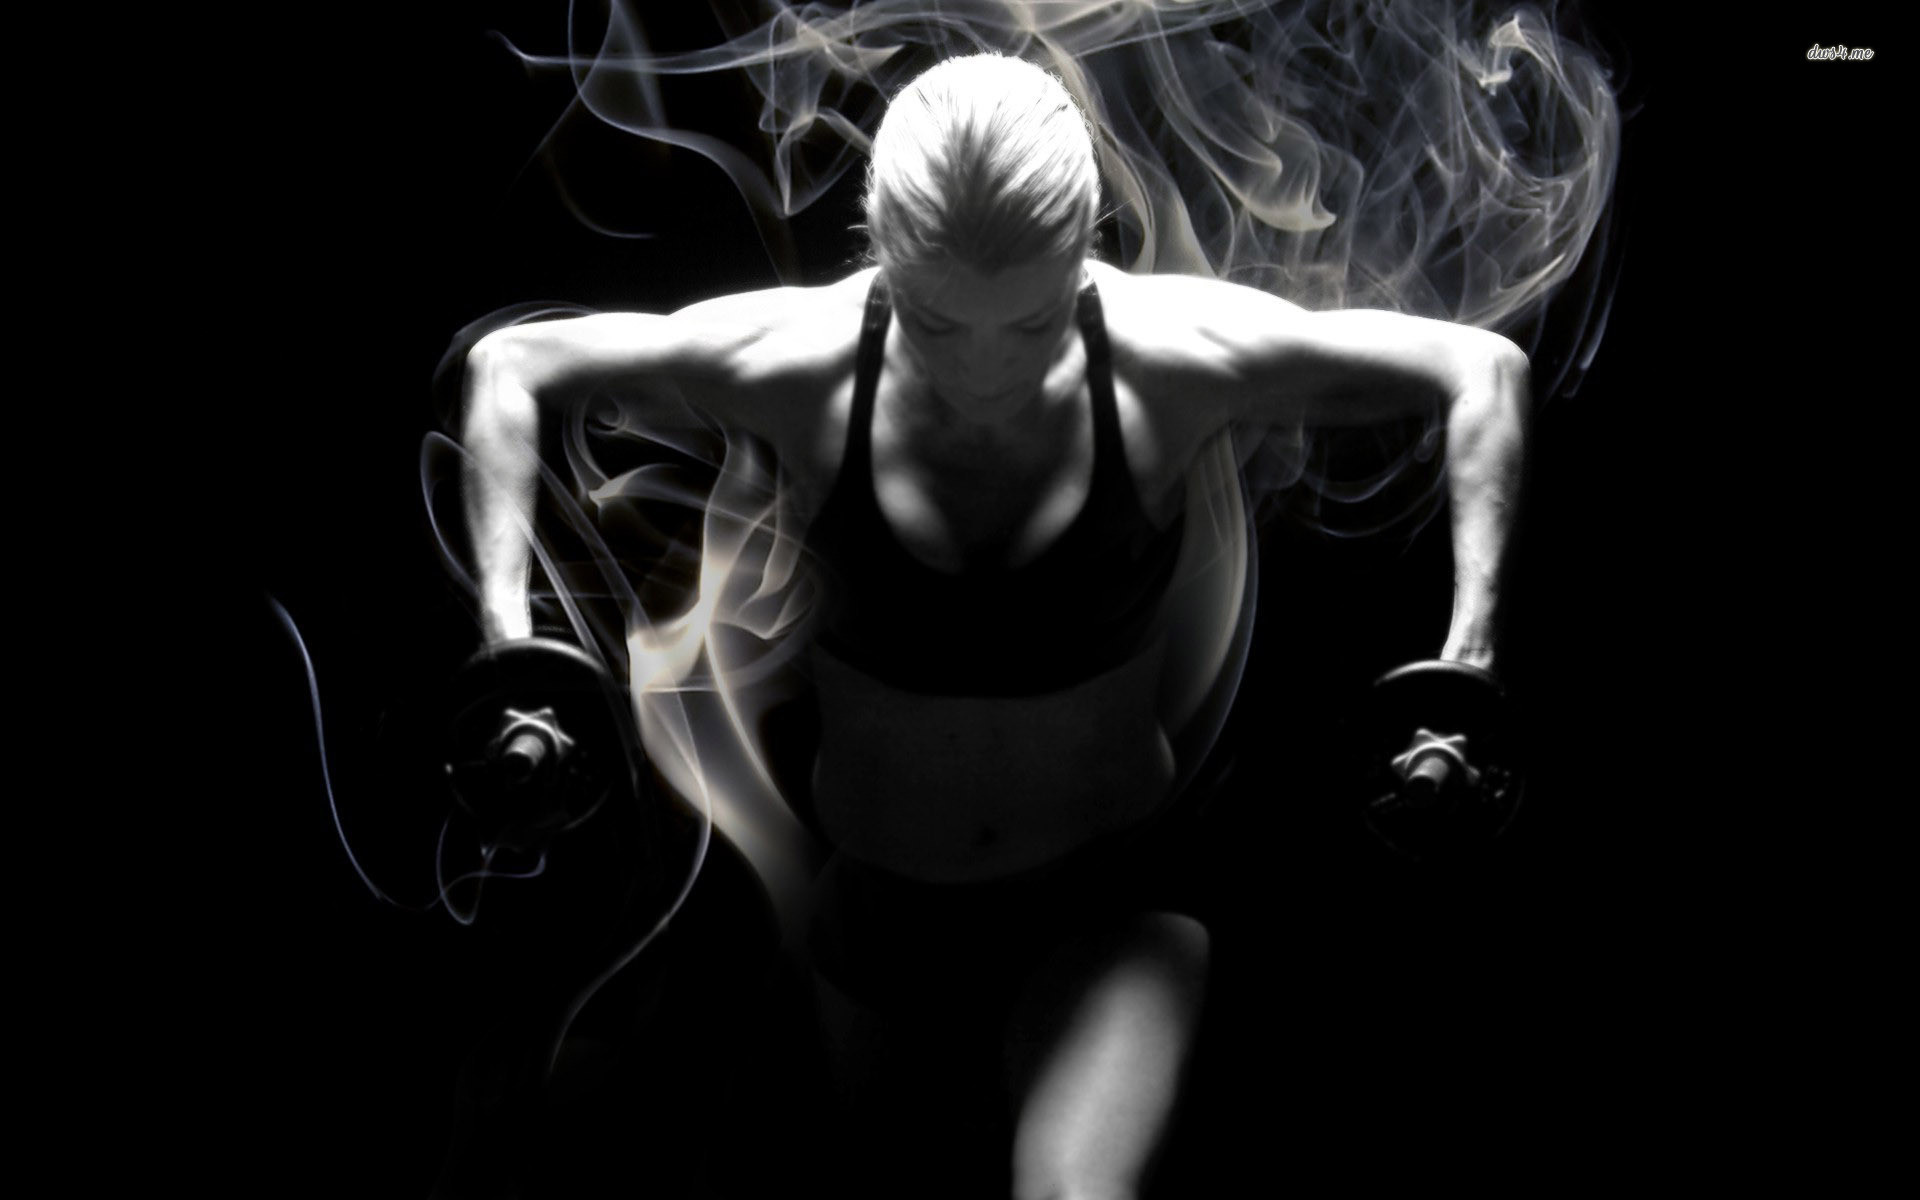 fitness motivation fond d'écran hd,noir,noir et blanc,photographie monochrome,monochrome,ténèbres